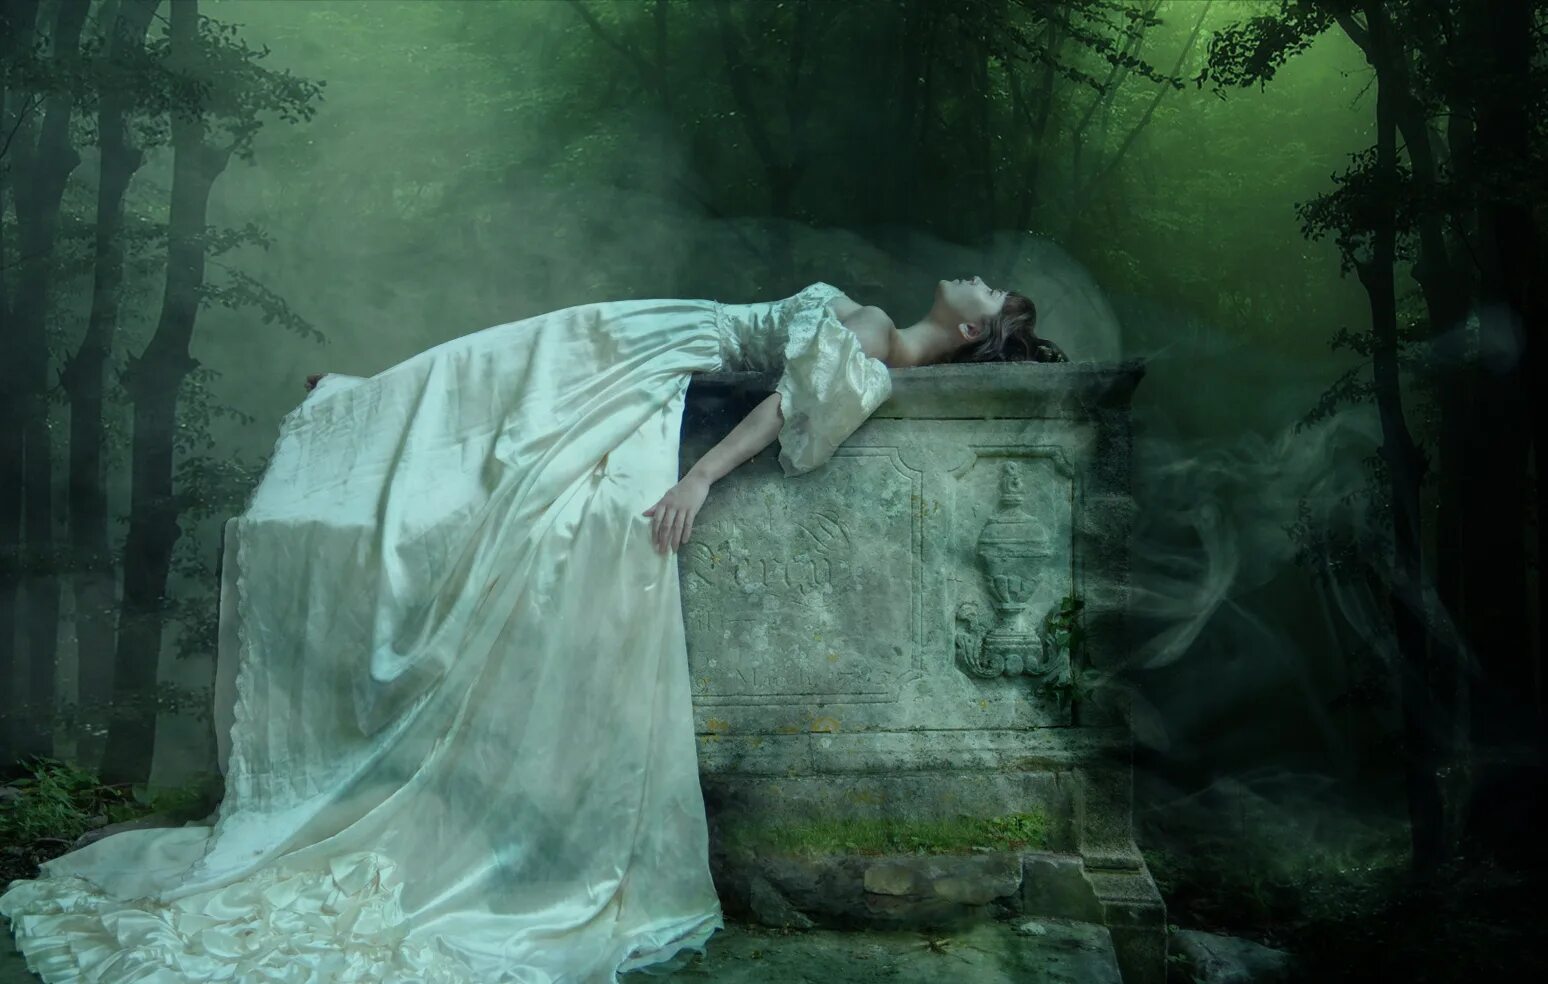 Мертвая девушка в платье. Принцесса в лесу. Мрачные фотосессии. Мистические вещи. Манга мистика юные девы и загадочное исчезновение